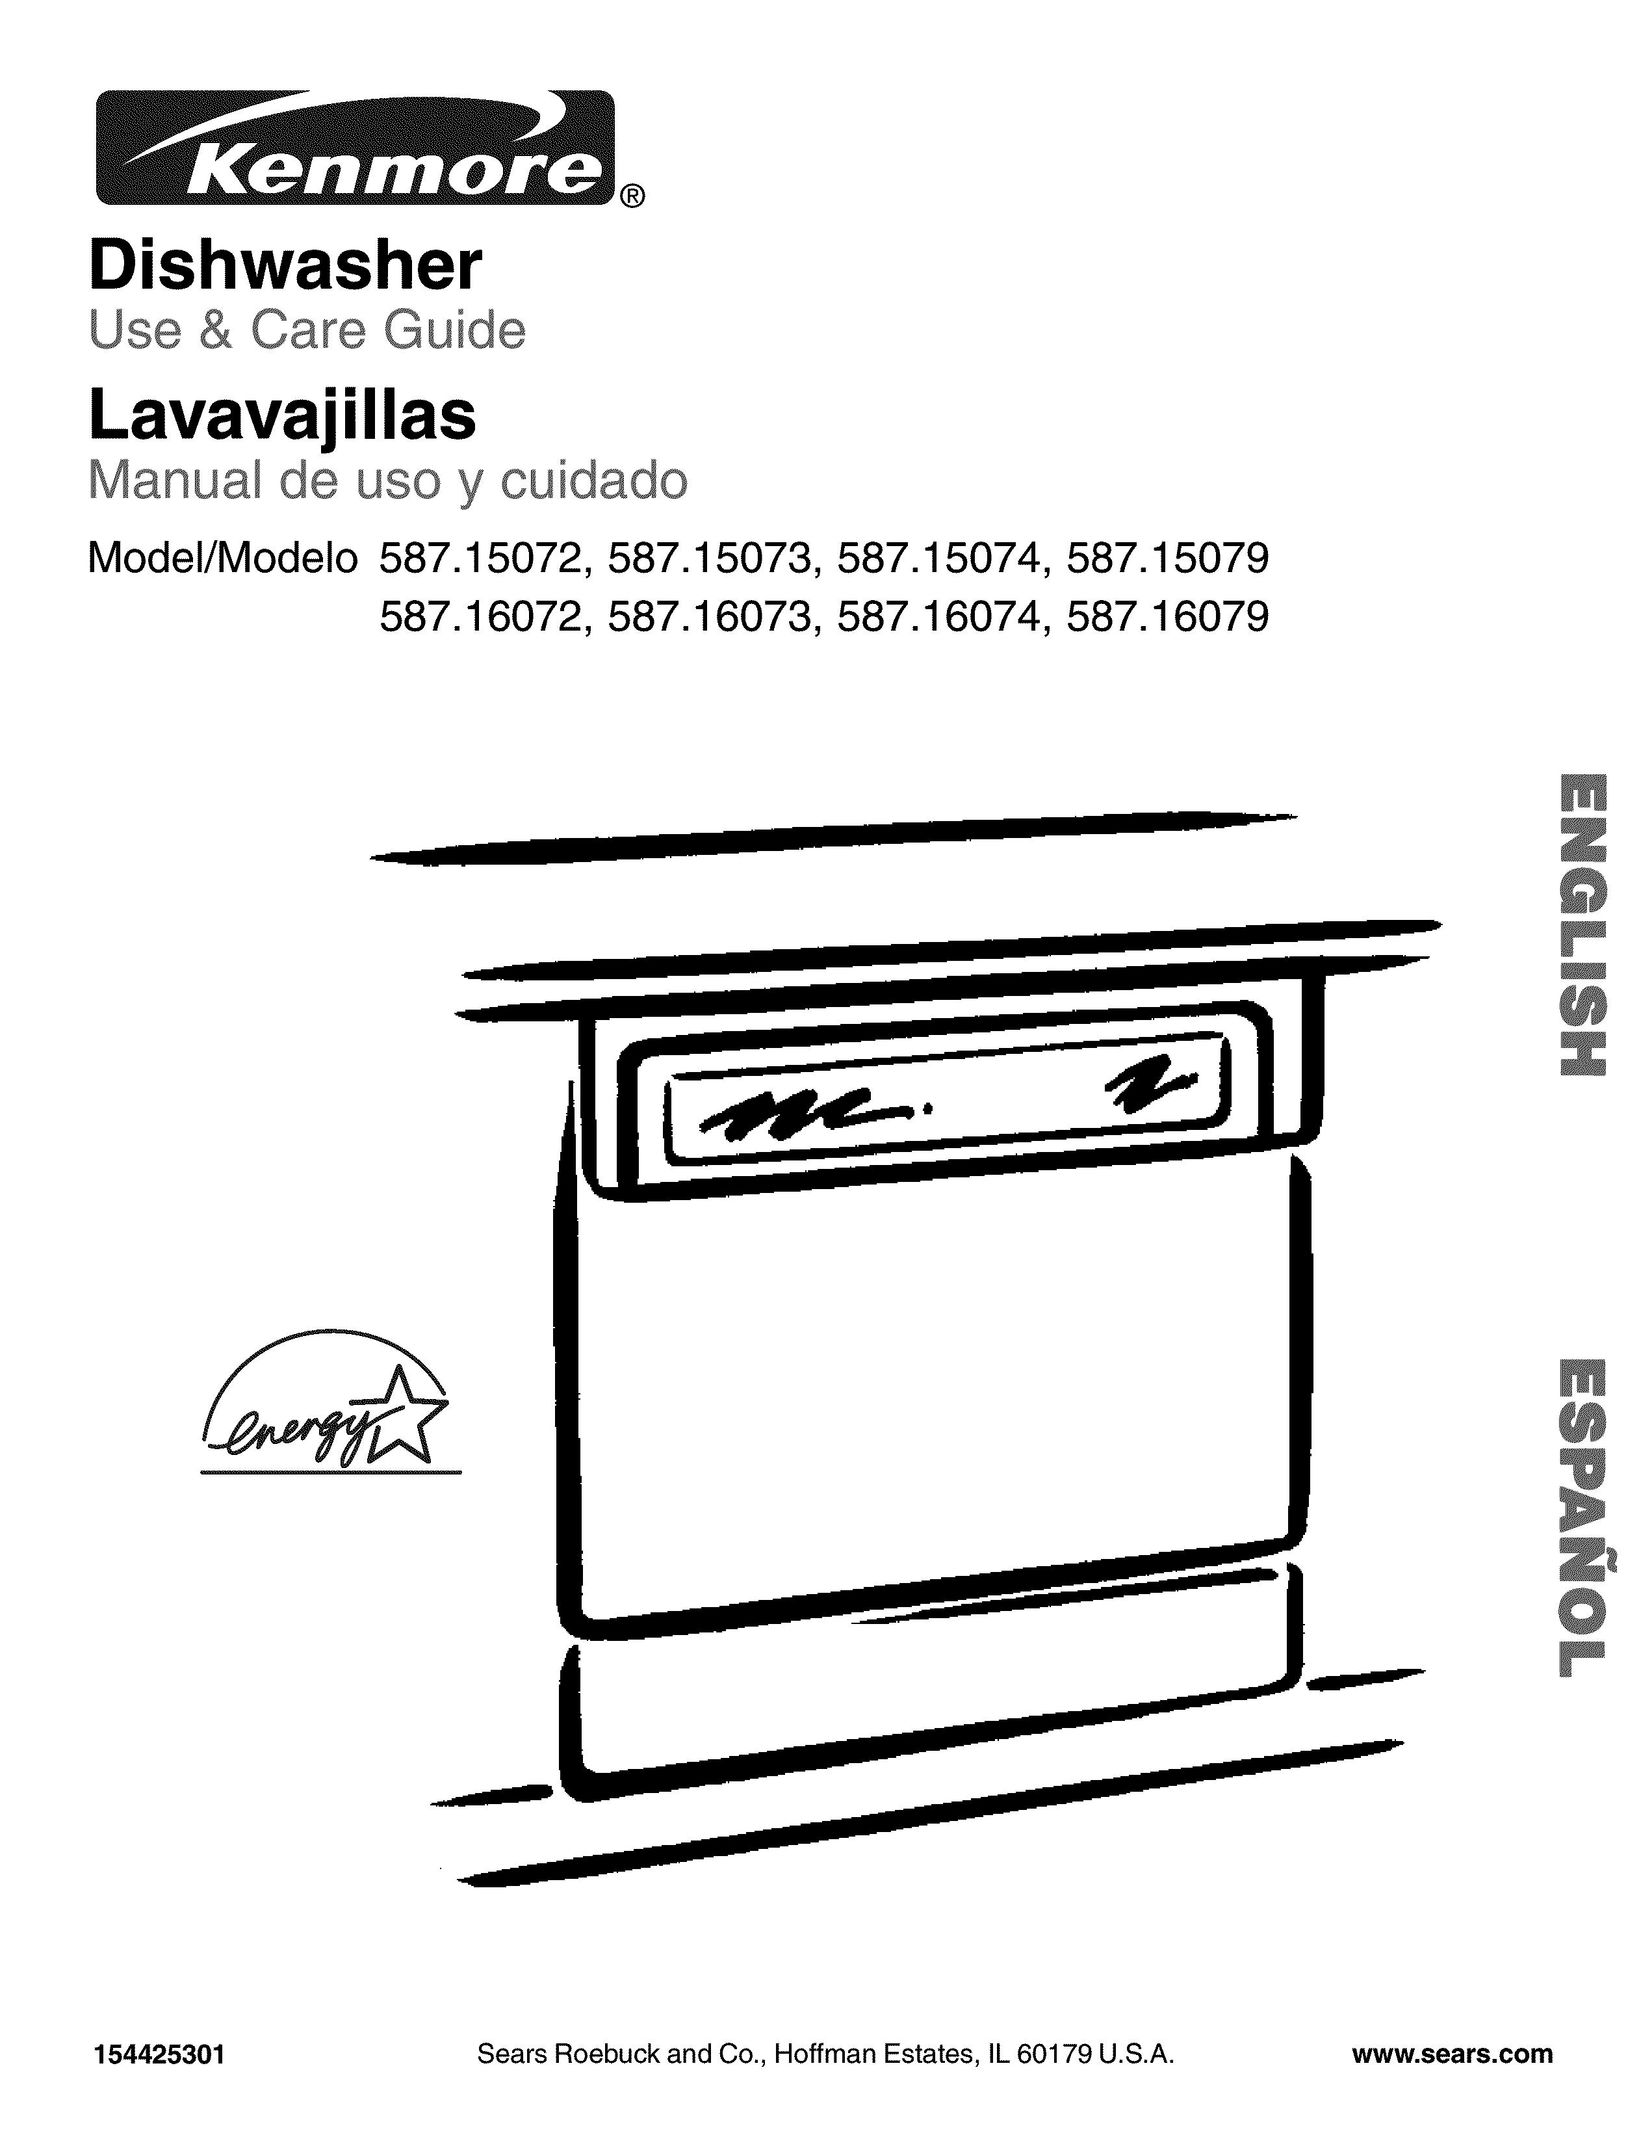 Kenmore 587.15074 Dishwasher User Manual